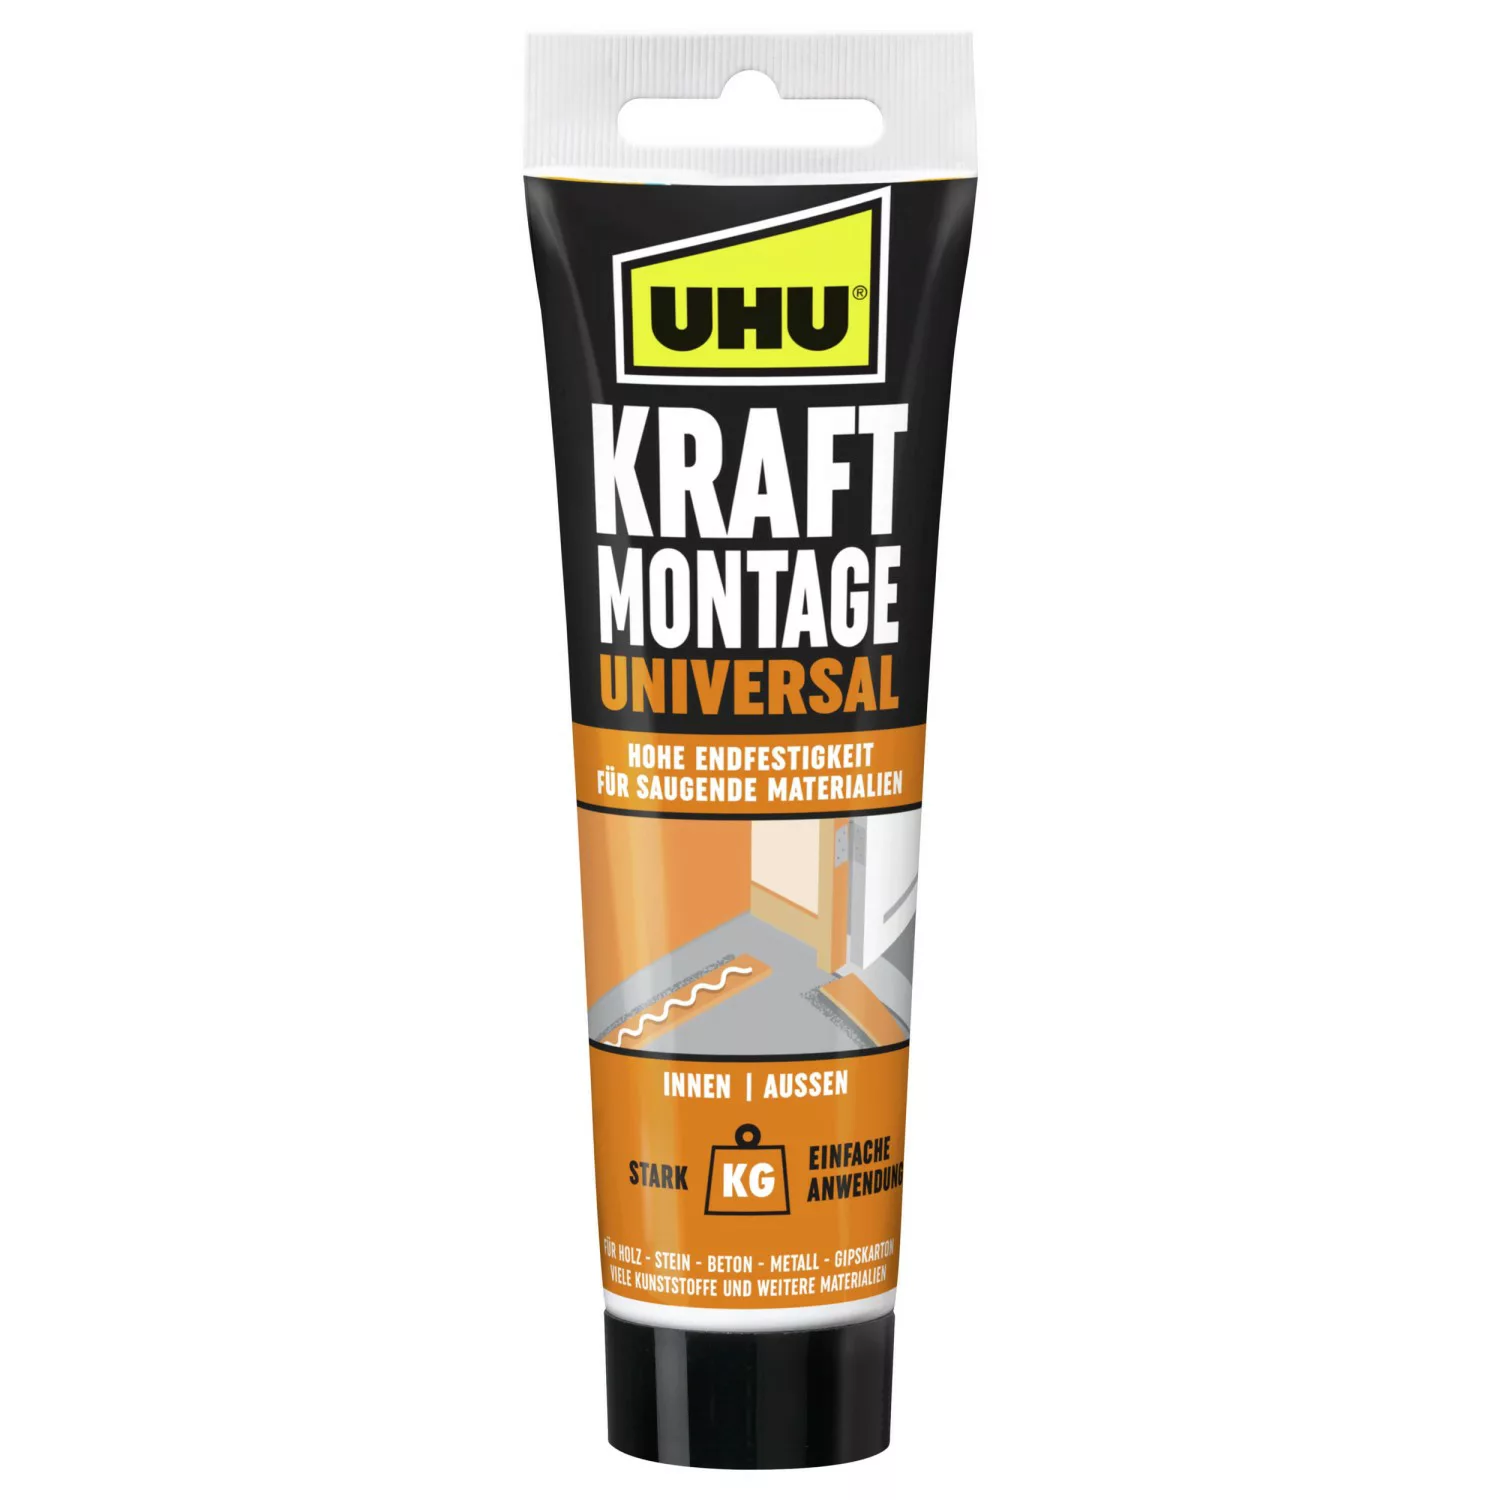 UHU Kraft Montage Universal Tube 200 g Beige günstig online kaufen